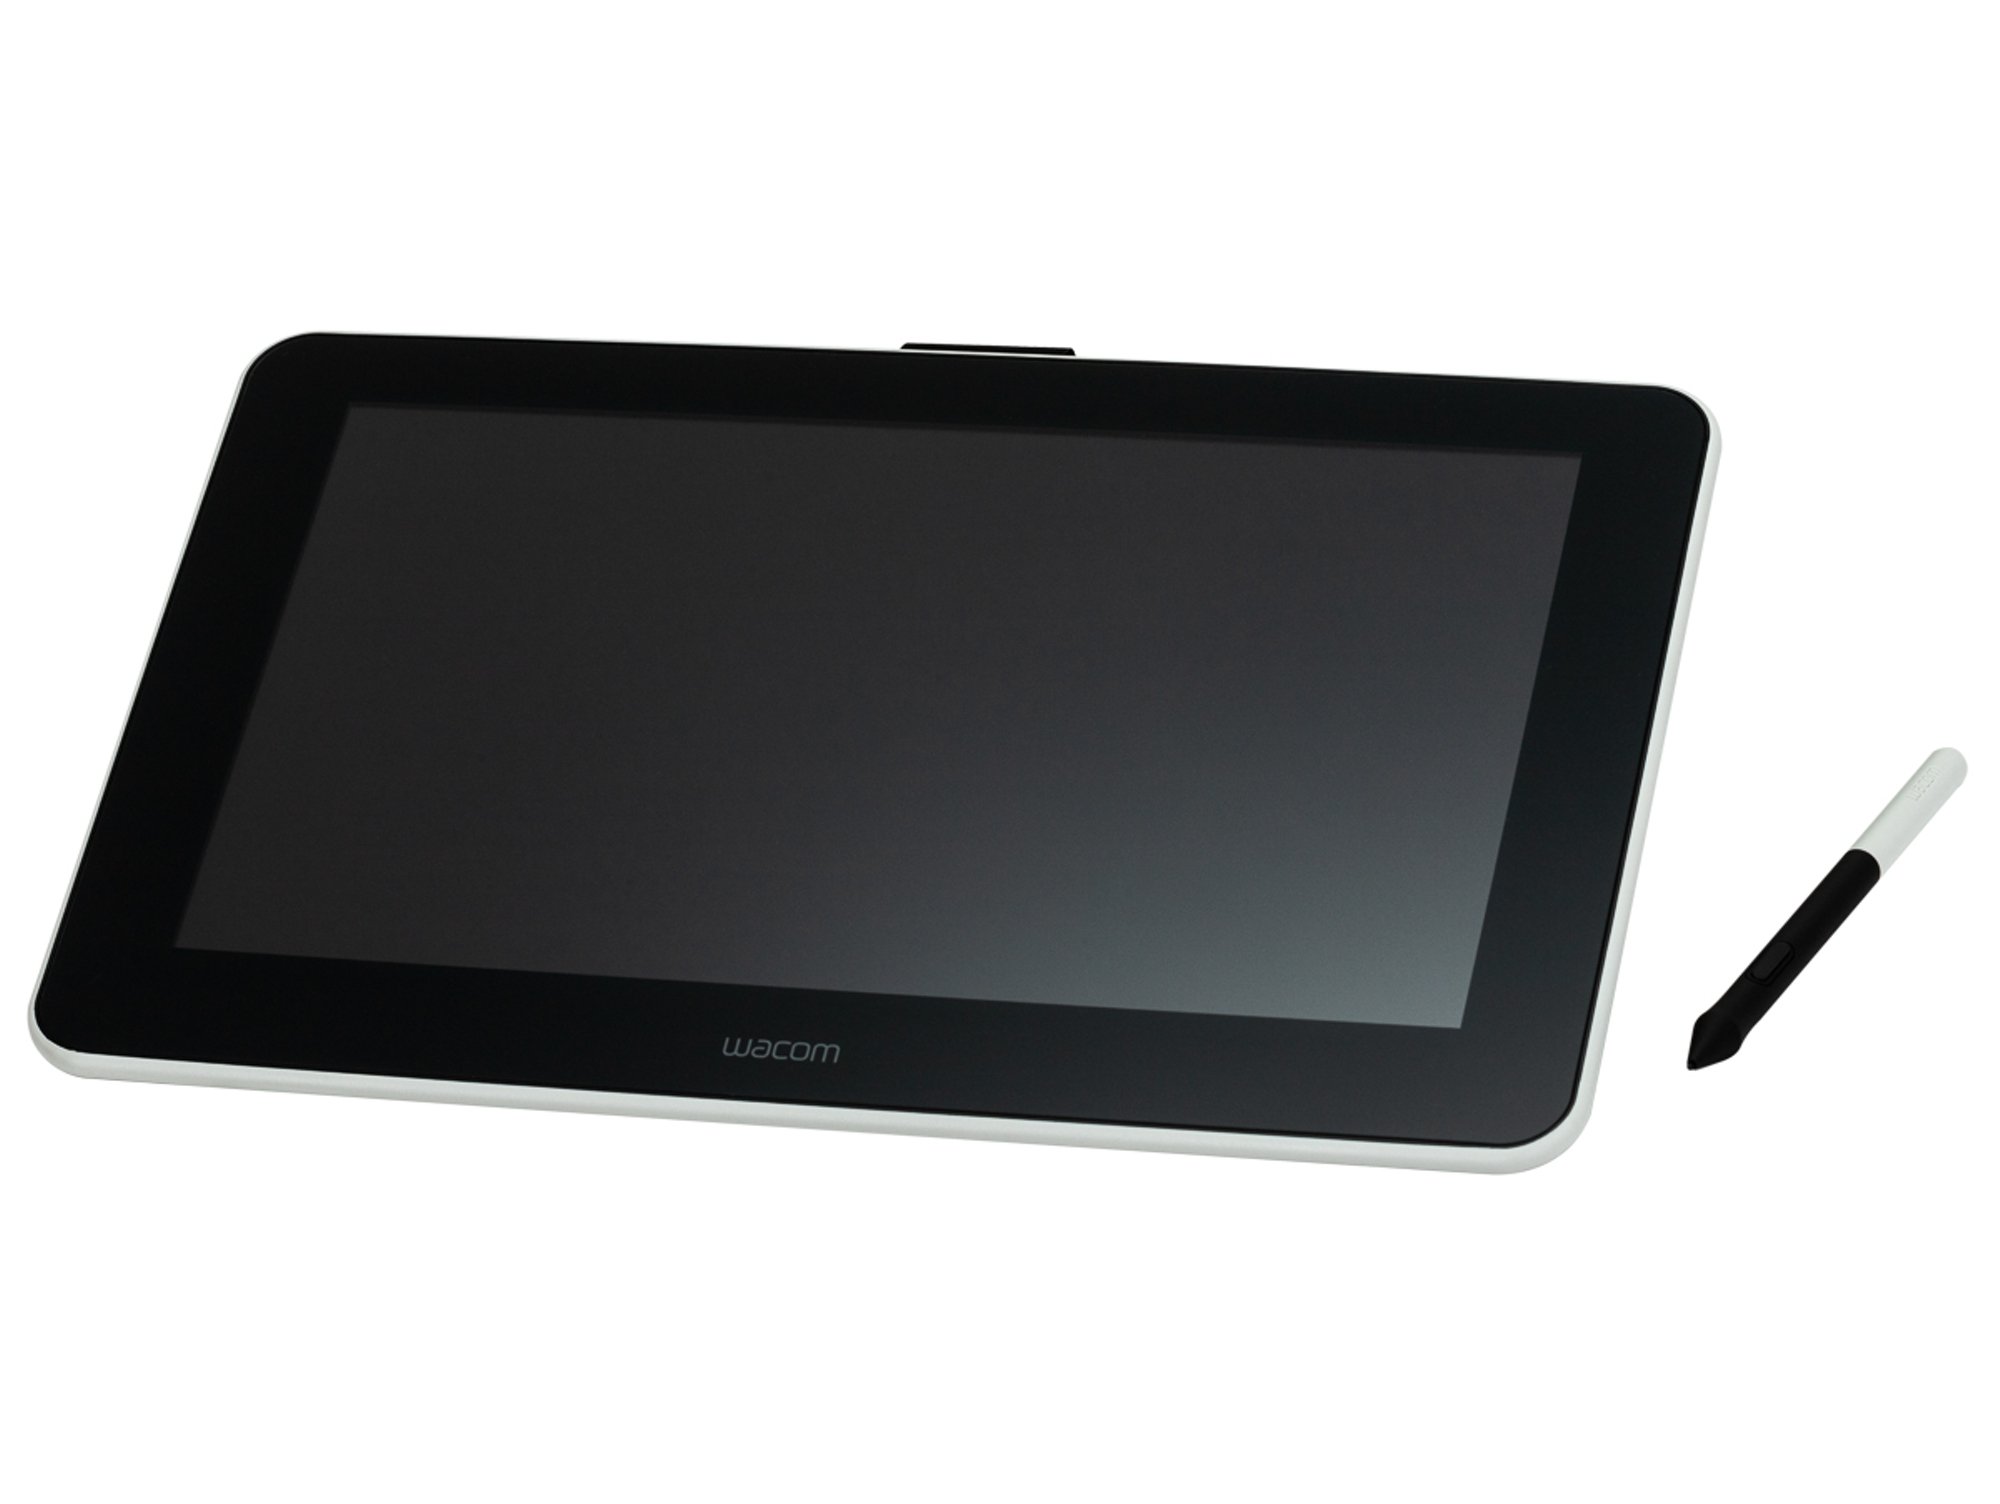 Tablet Wacom One 13 13.3 full hdmi pantalla windows 10 pro negro creative pen display de con software incluido para esbozo y dibujo en 1920 x 1080 colores vivos preciso oficina casa dct133